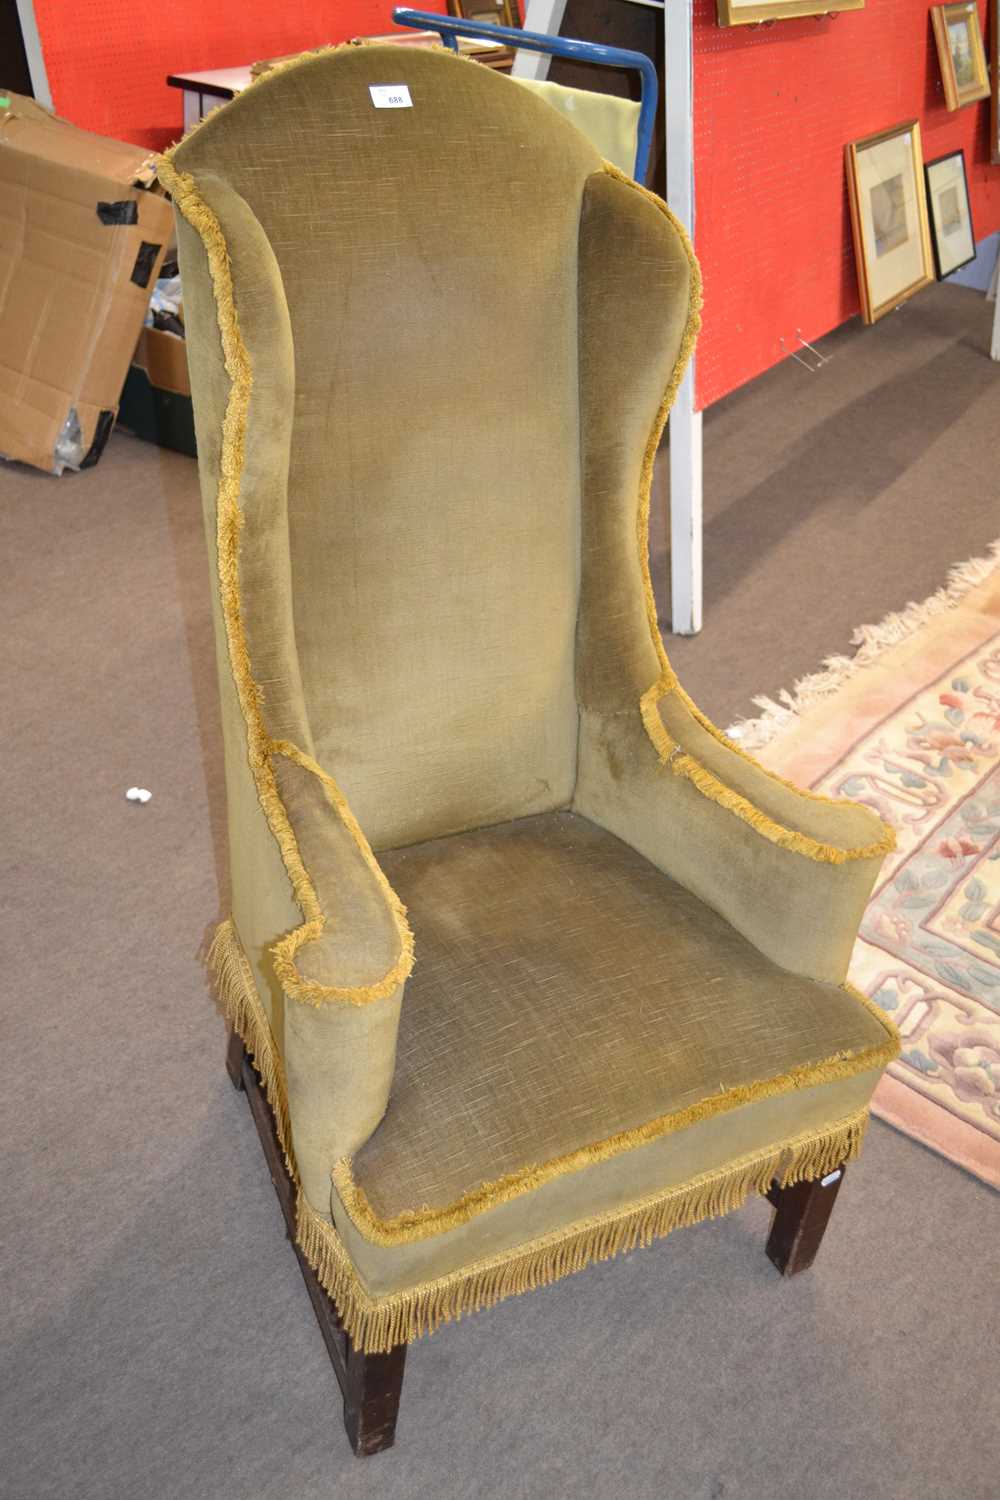 A narrow Georgian style wing back armchair, 118cm high